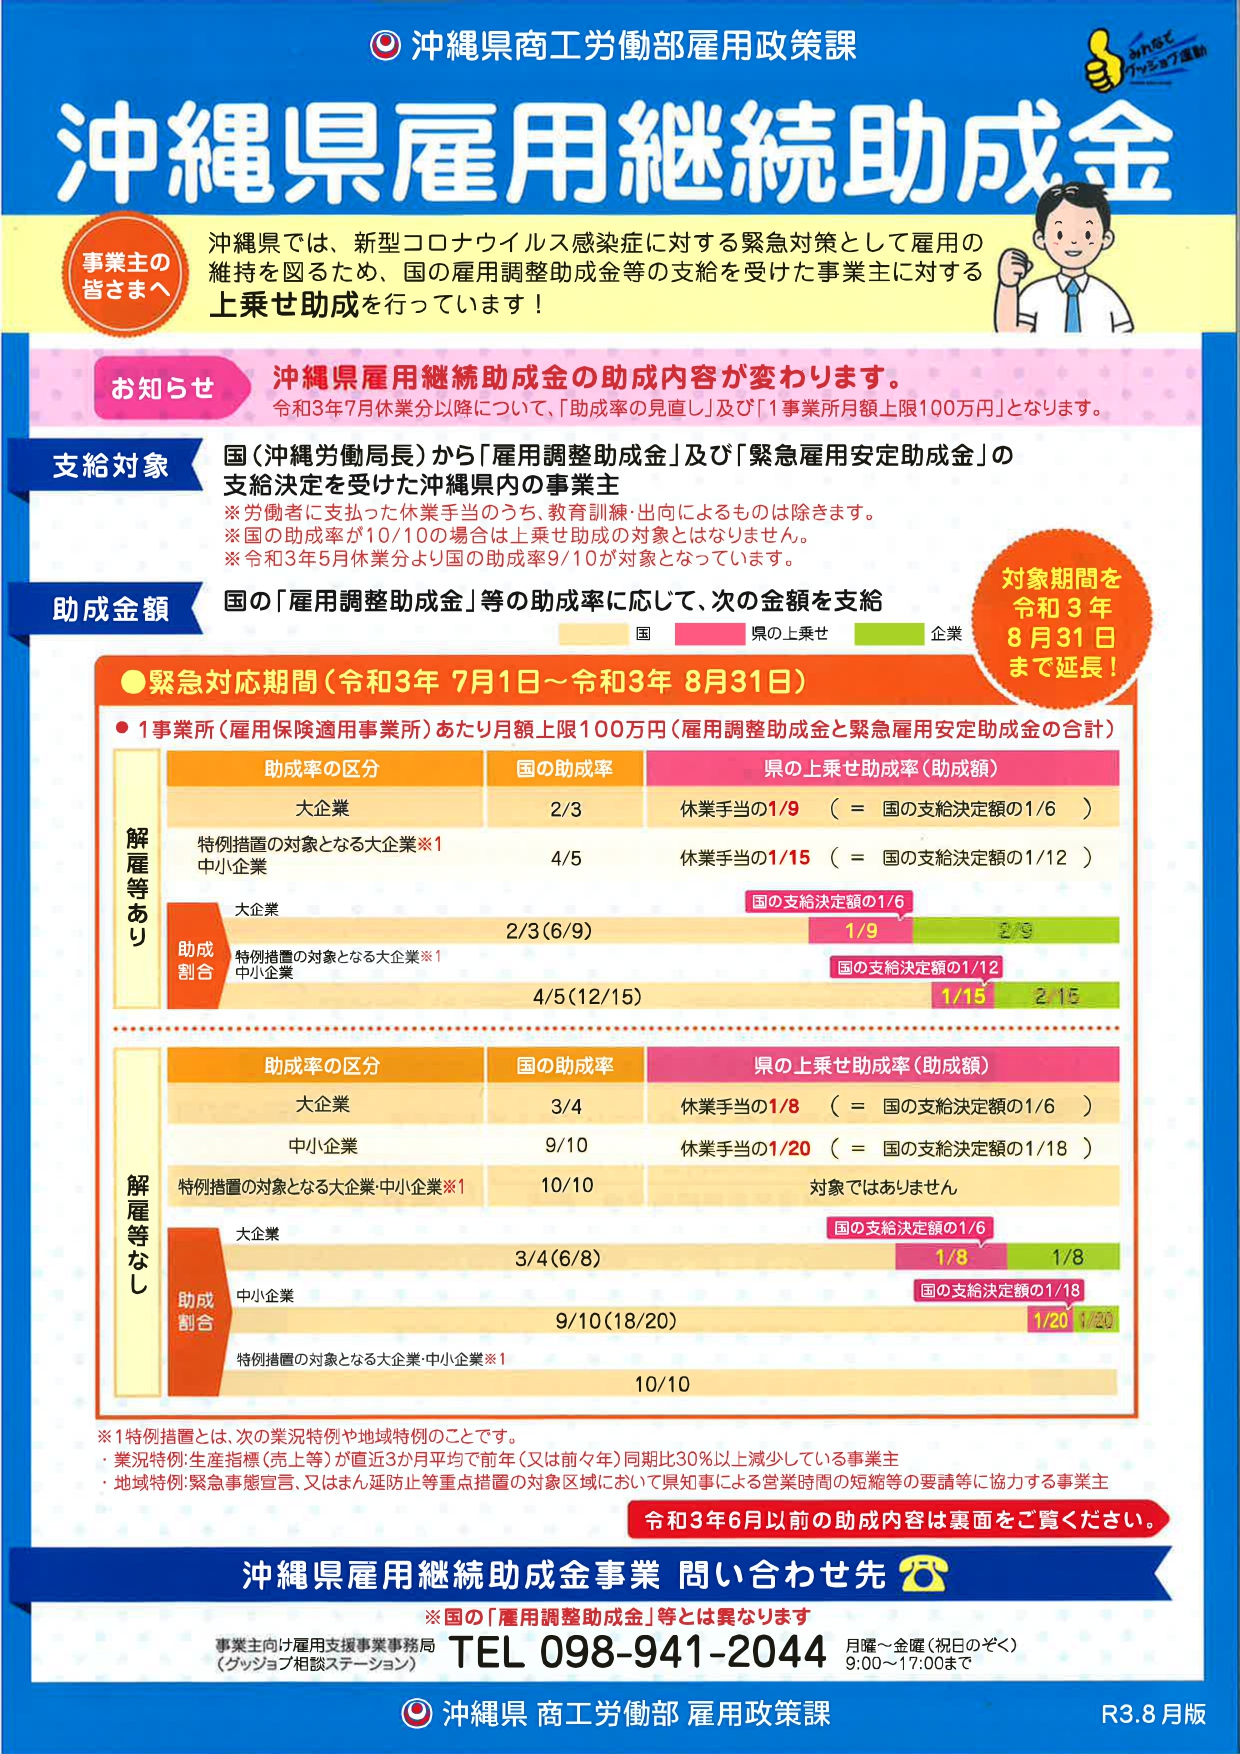 【雇用調整助成金を活用されている事業者の方向け】沖縄県雇用継続助成金について